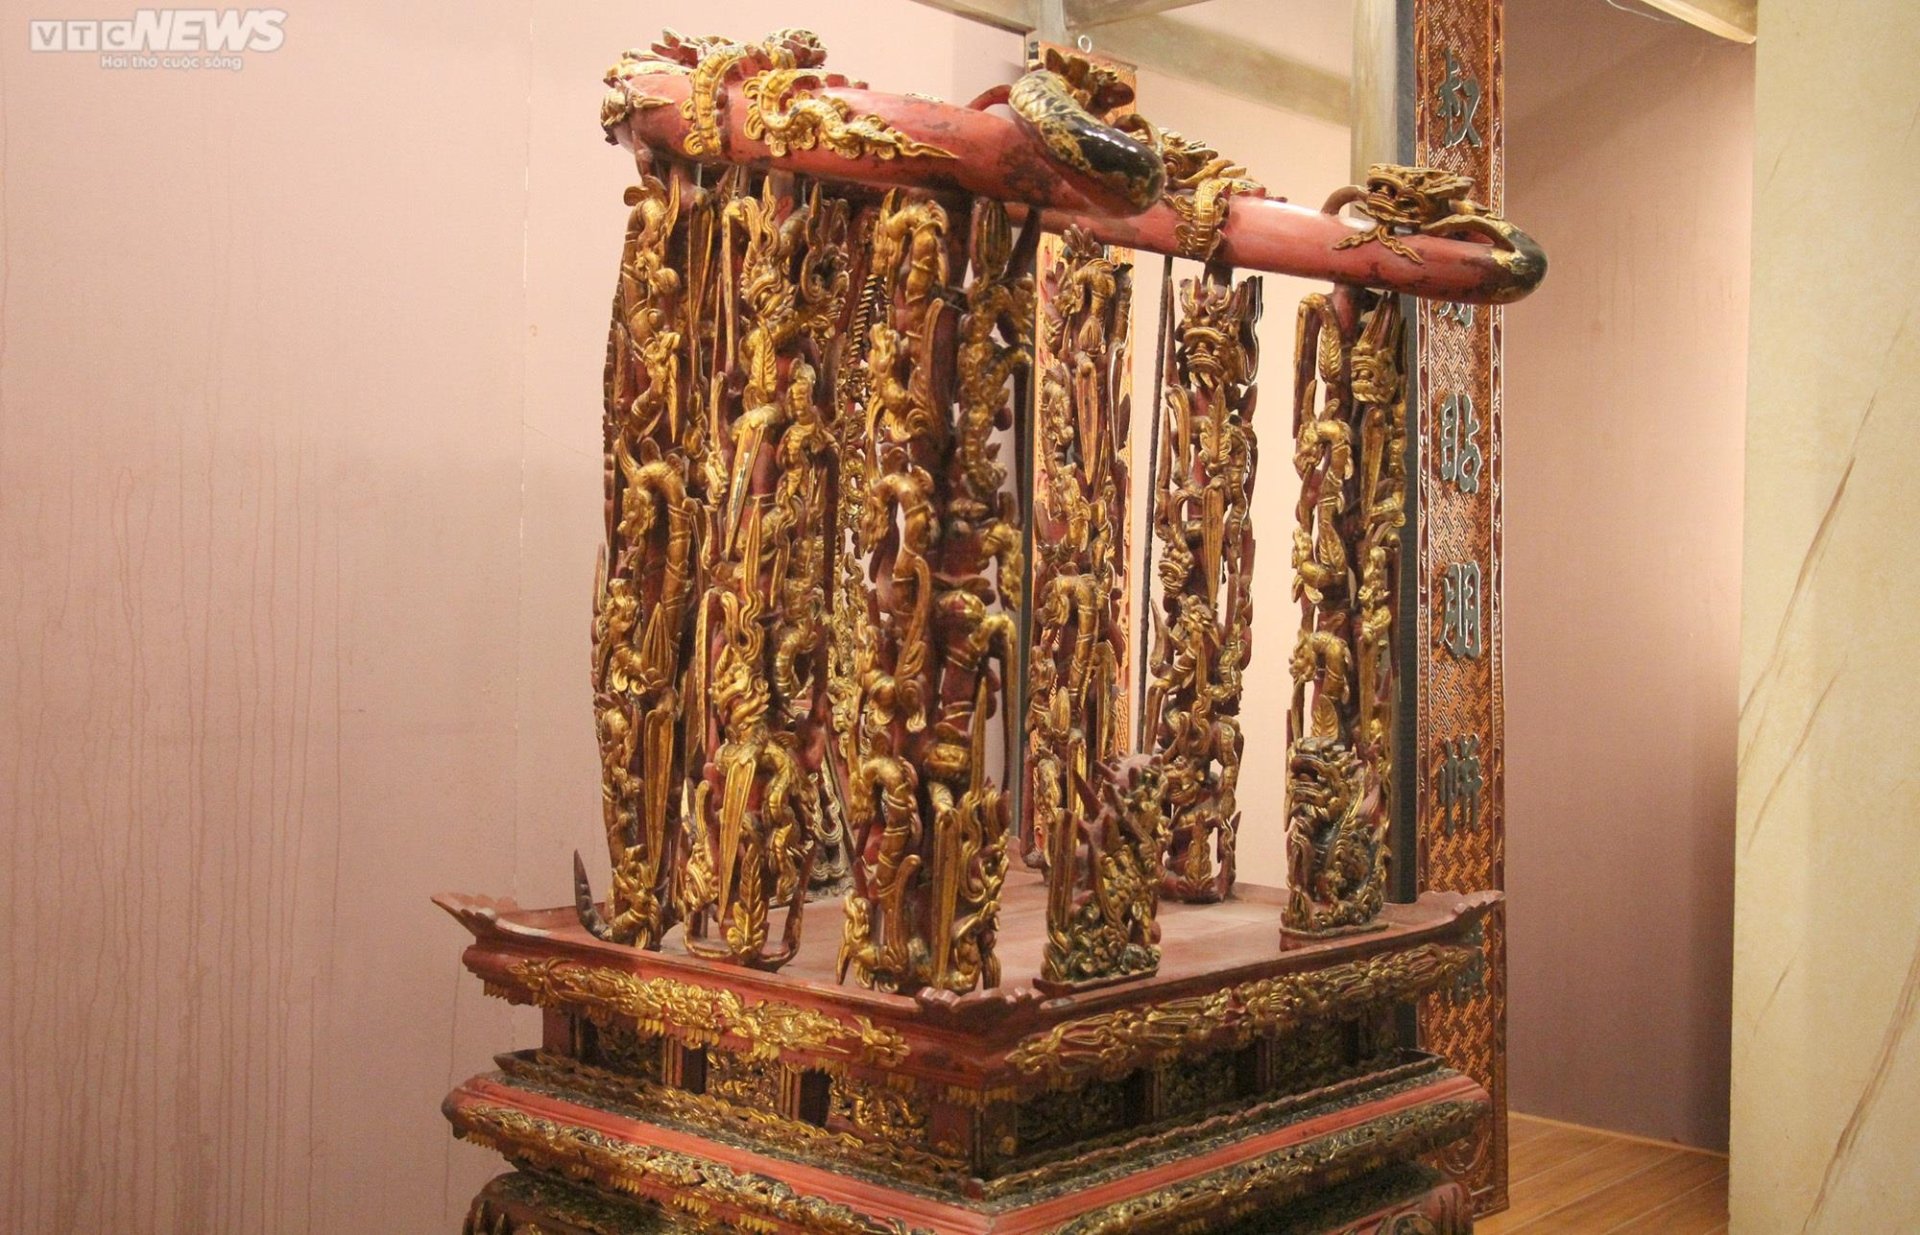 Chiêm ngưỡng ngai thờ độc nhất vô nhị hơn 300 năm tuổi ở Thái Bình - 5